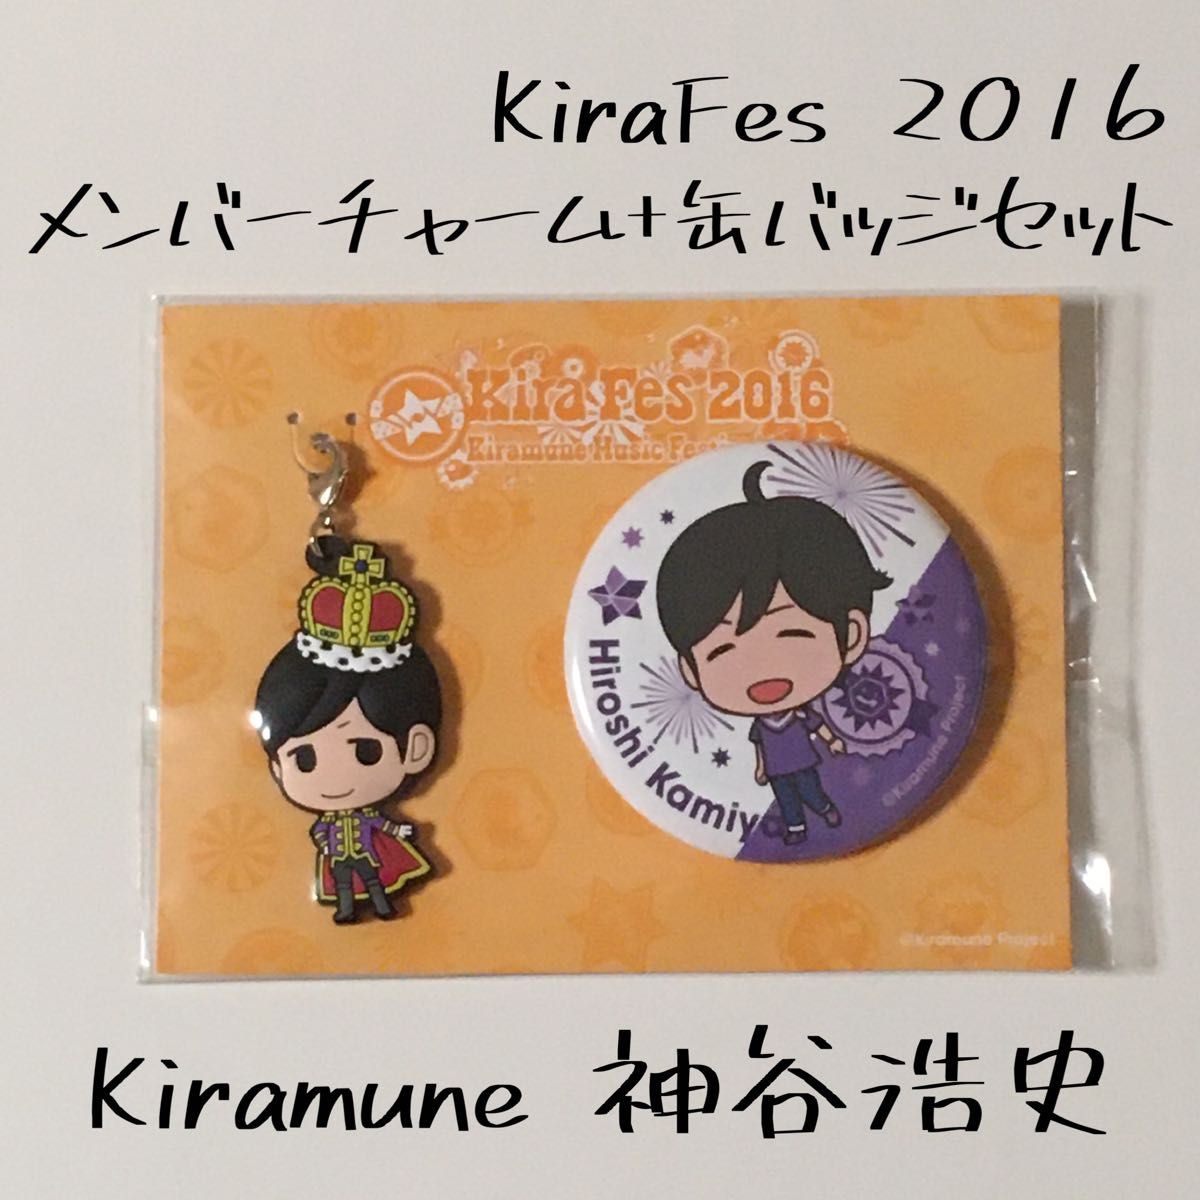 キラミューン Kiramune 神谷浩史 キラフェス KiraFes 2016 ラバスト 缶バッチ 缶バッジ 声優 グッズ 